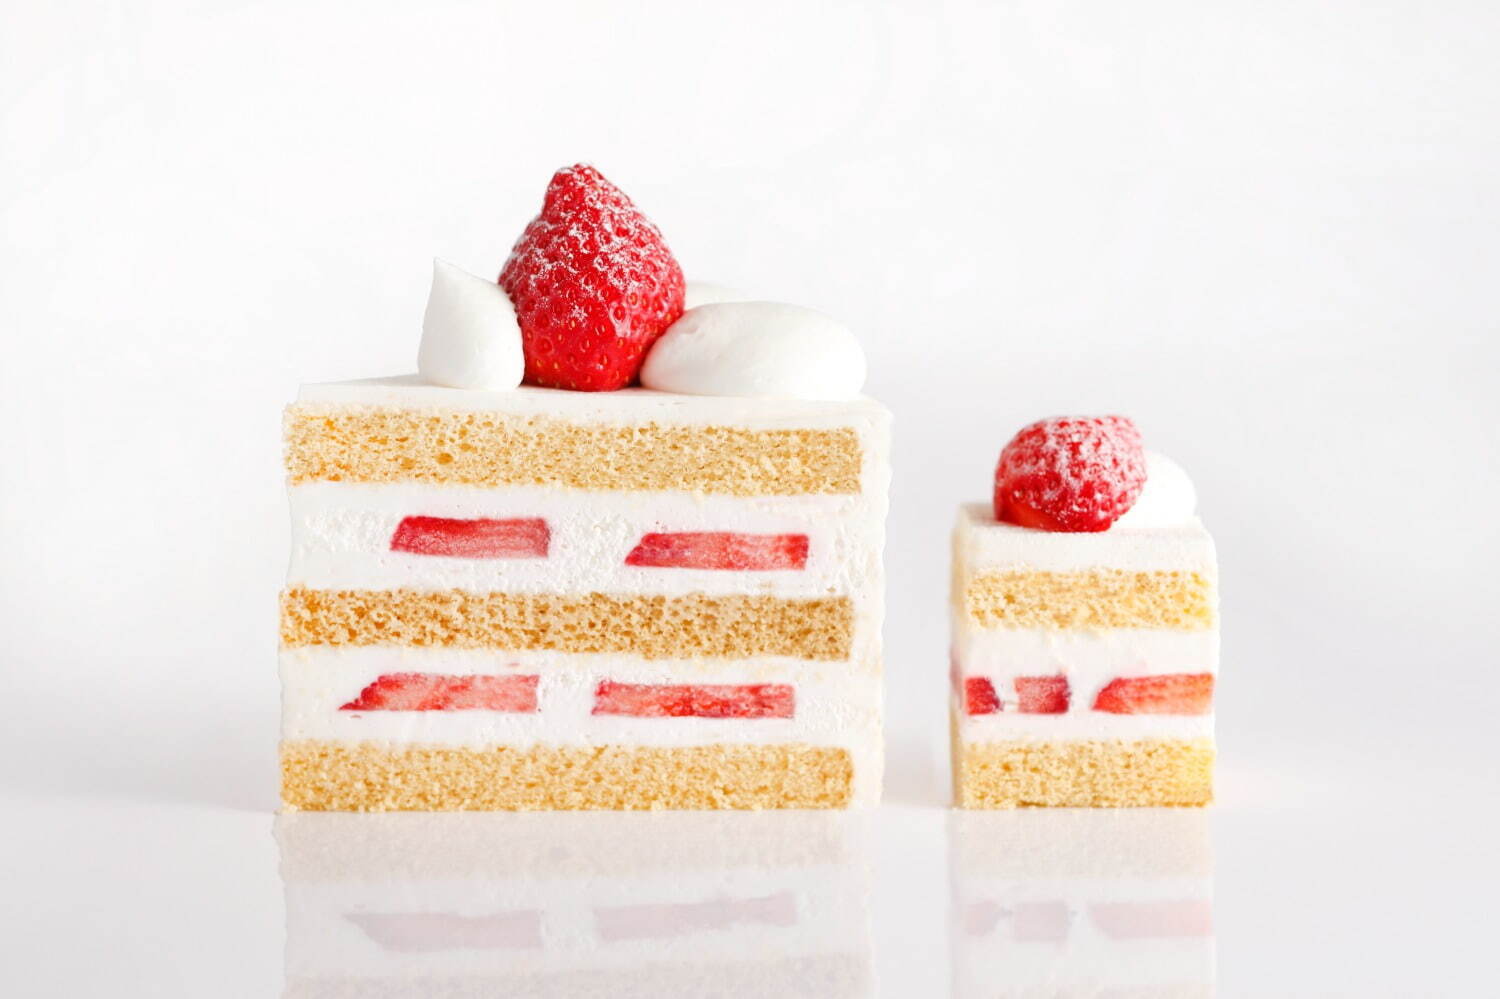 「新スーパーあまおうショートケーキ」
※アフタヌーンティーセットではミニサイズで提供。